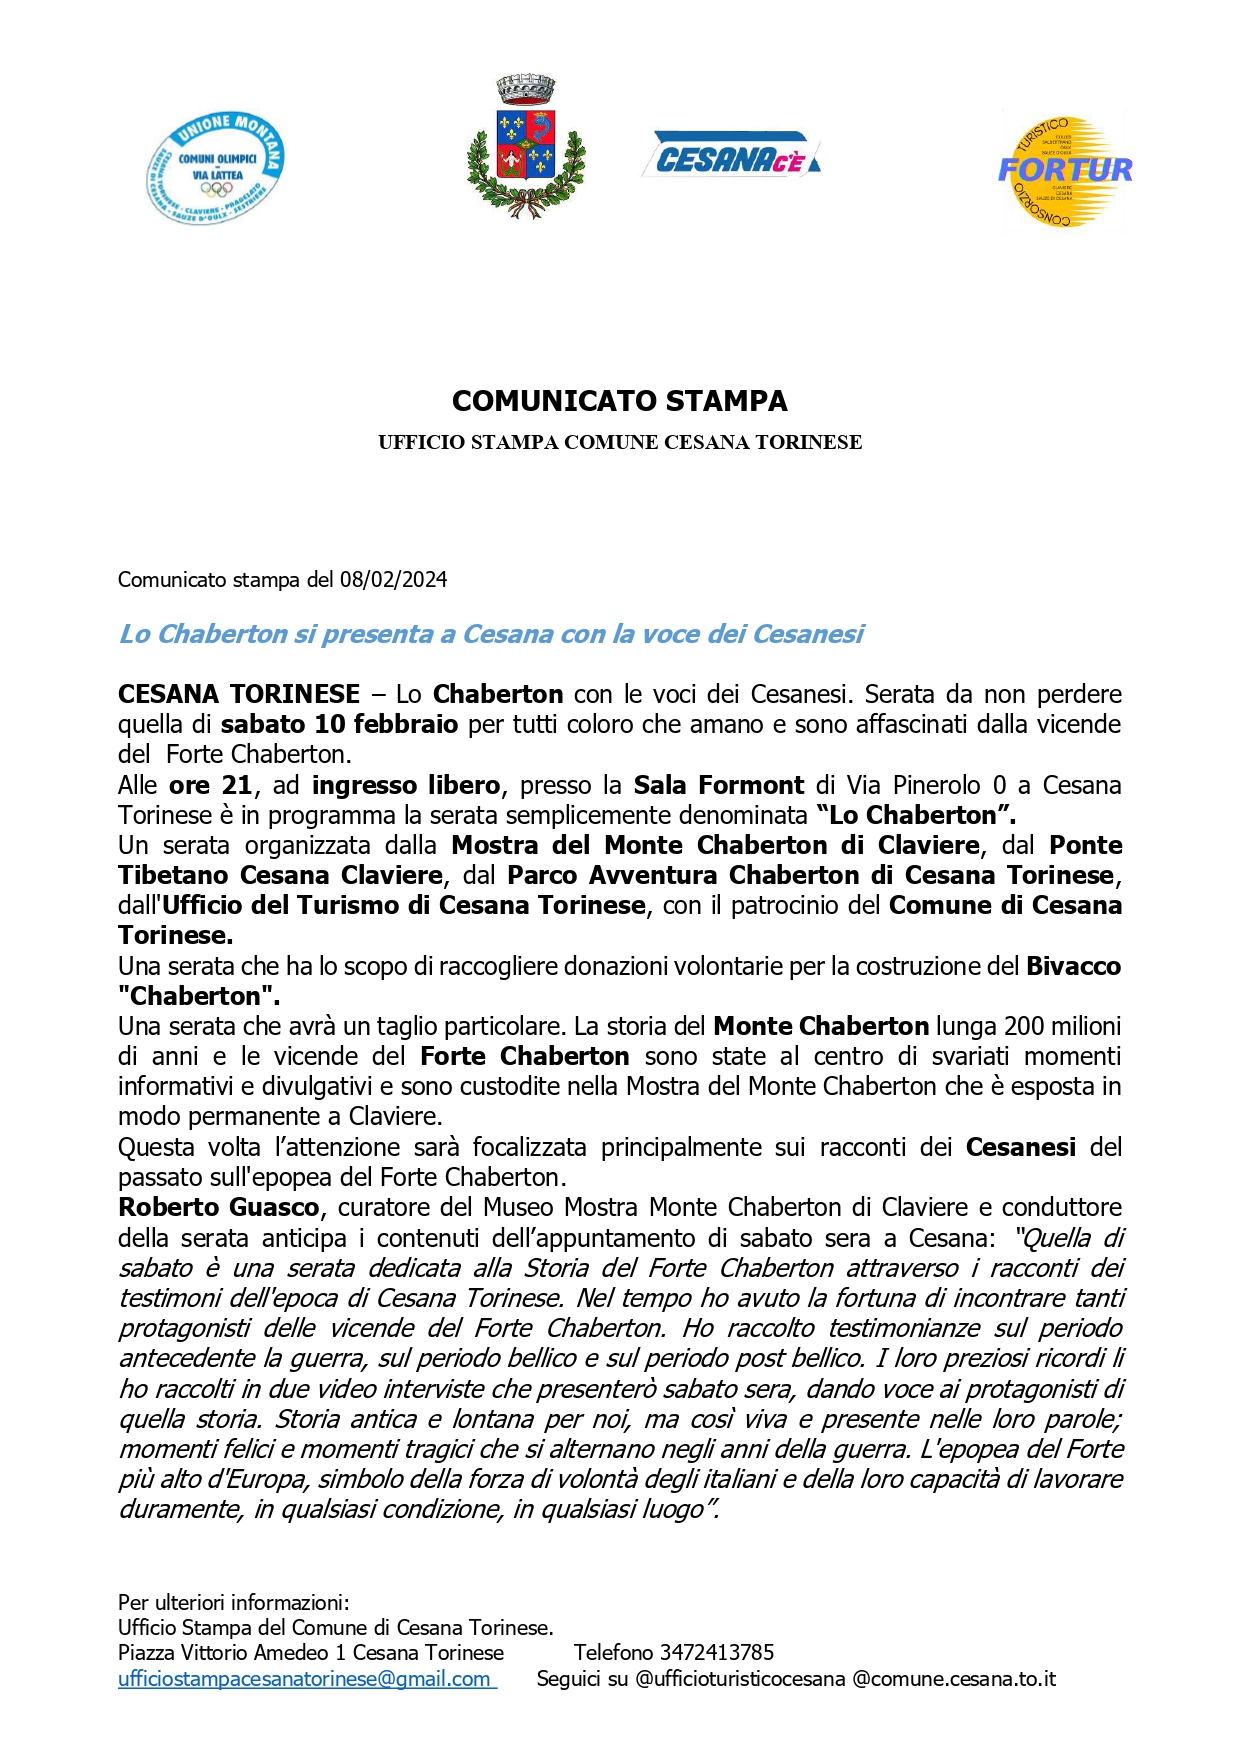 Comunicato Stampa del 08/02/2024 – “Lo Chaberton si presenta a Cesana con la voce dei Cesanesi”.